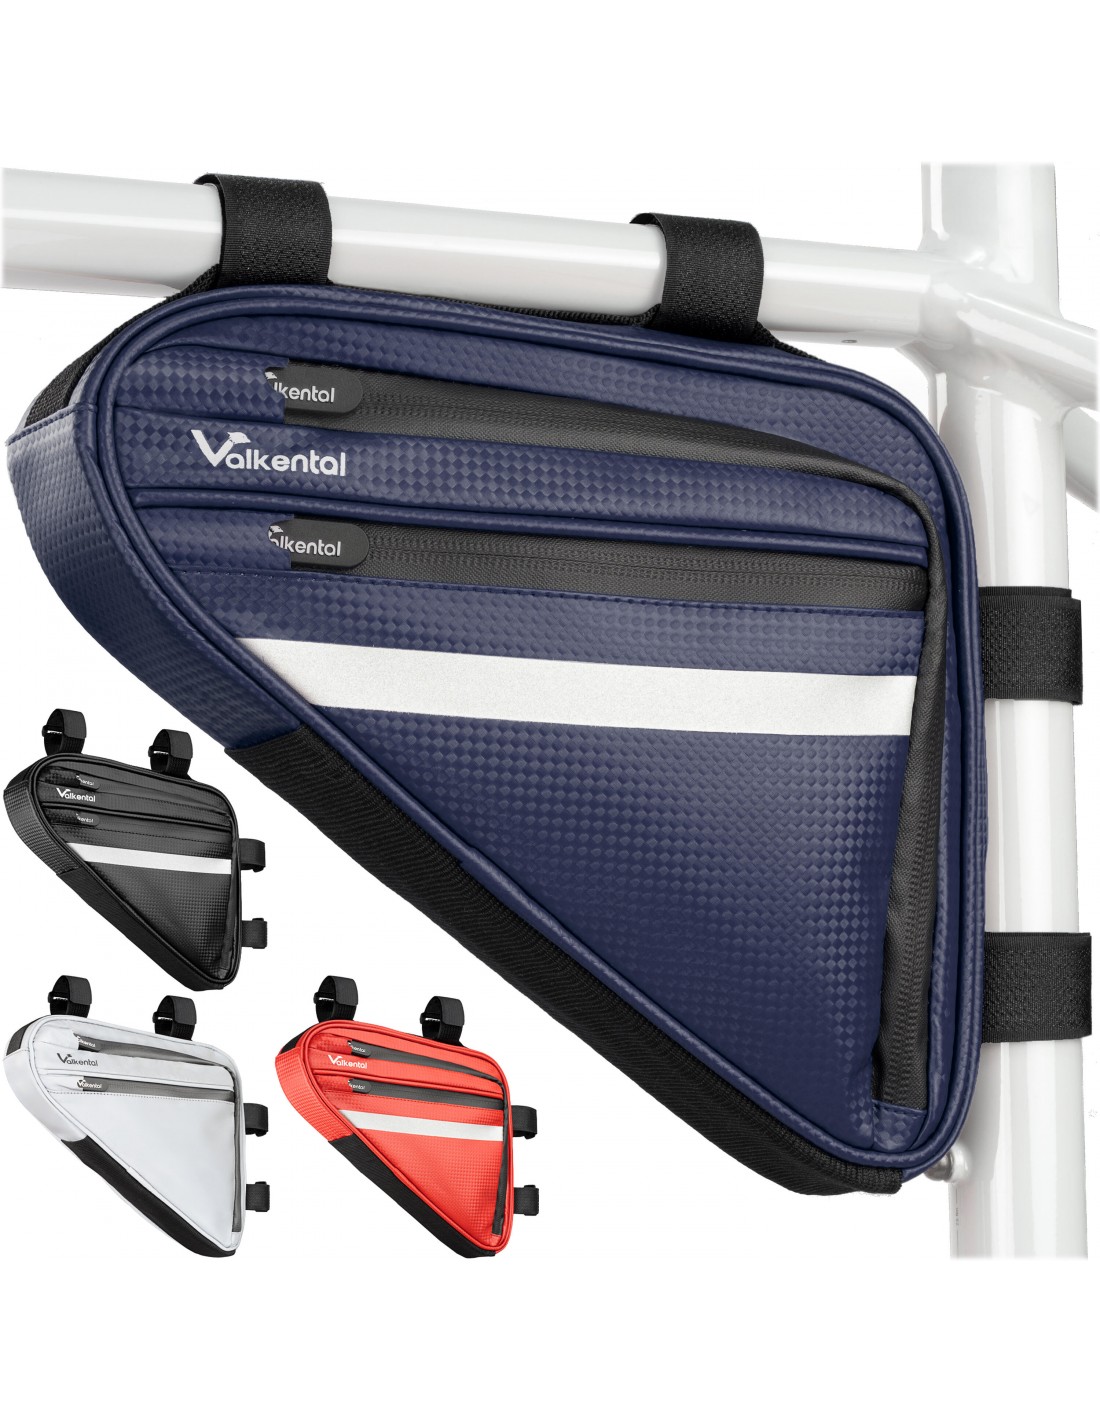 Valkental Triangel Bag - Praktische Rahmentasche mit viel Platz, blau Taschenvariante - Rahmentasche, von Valkental